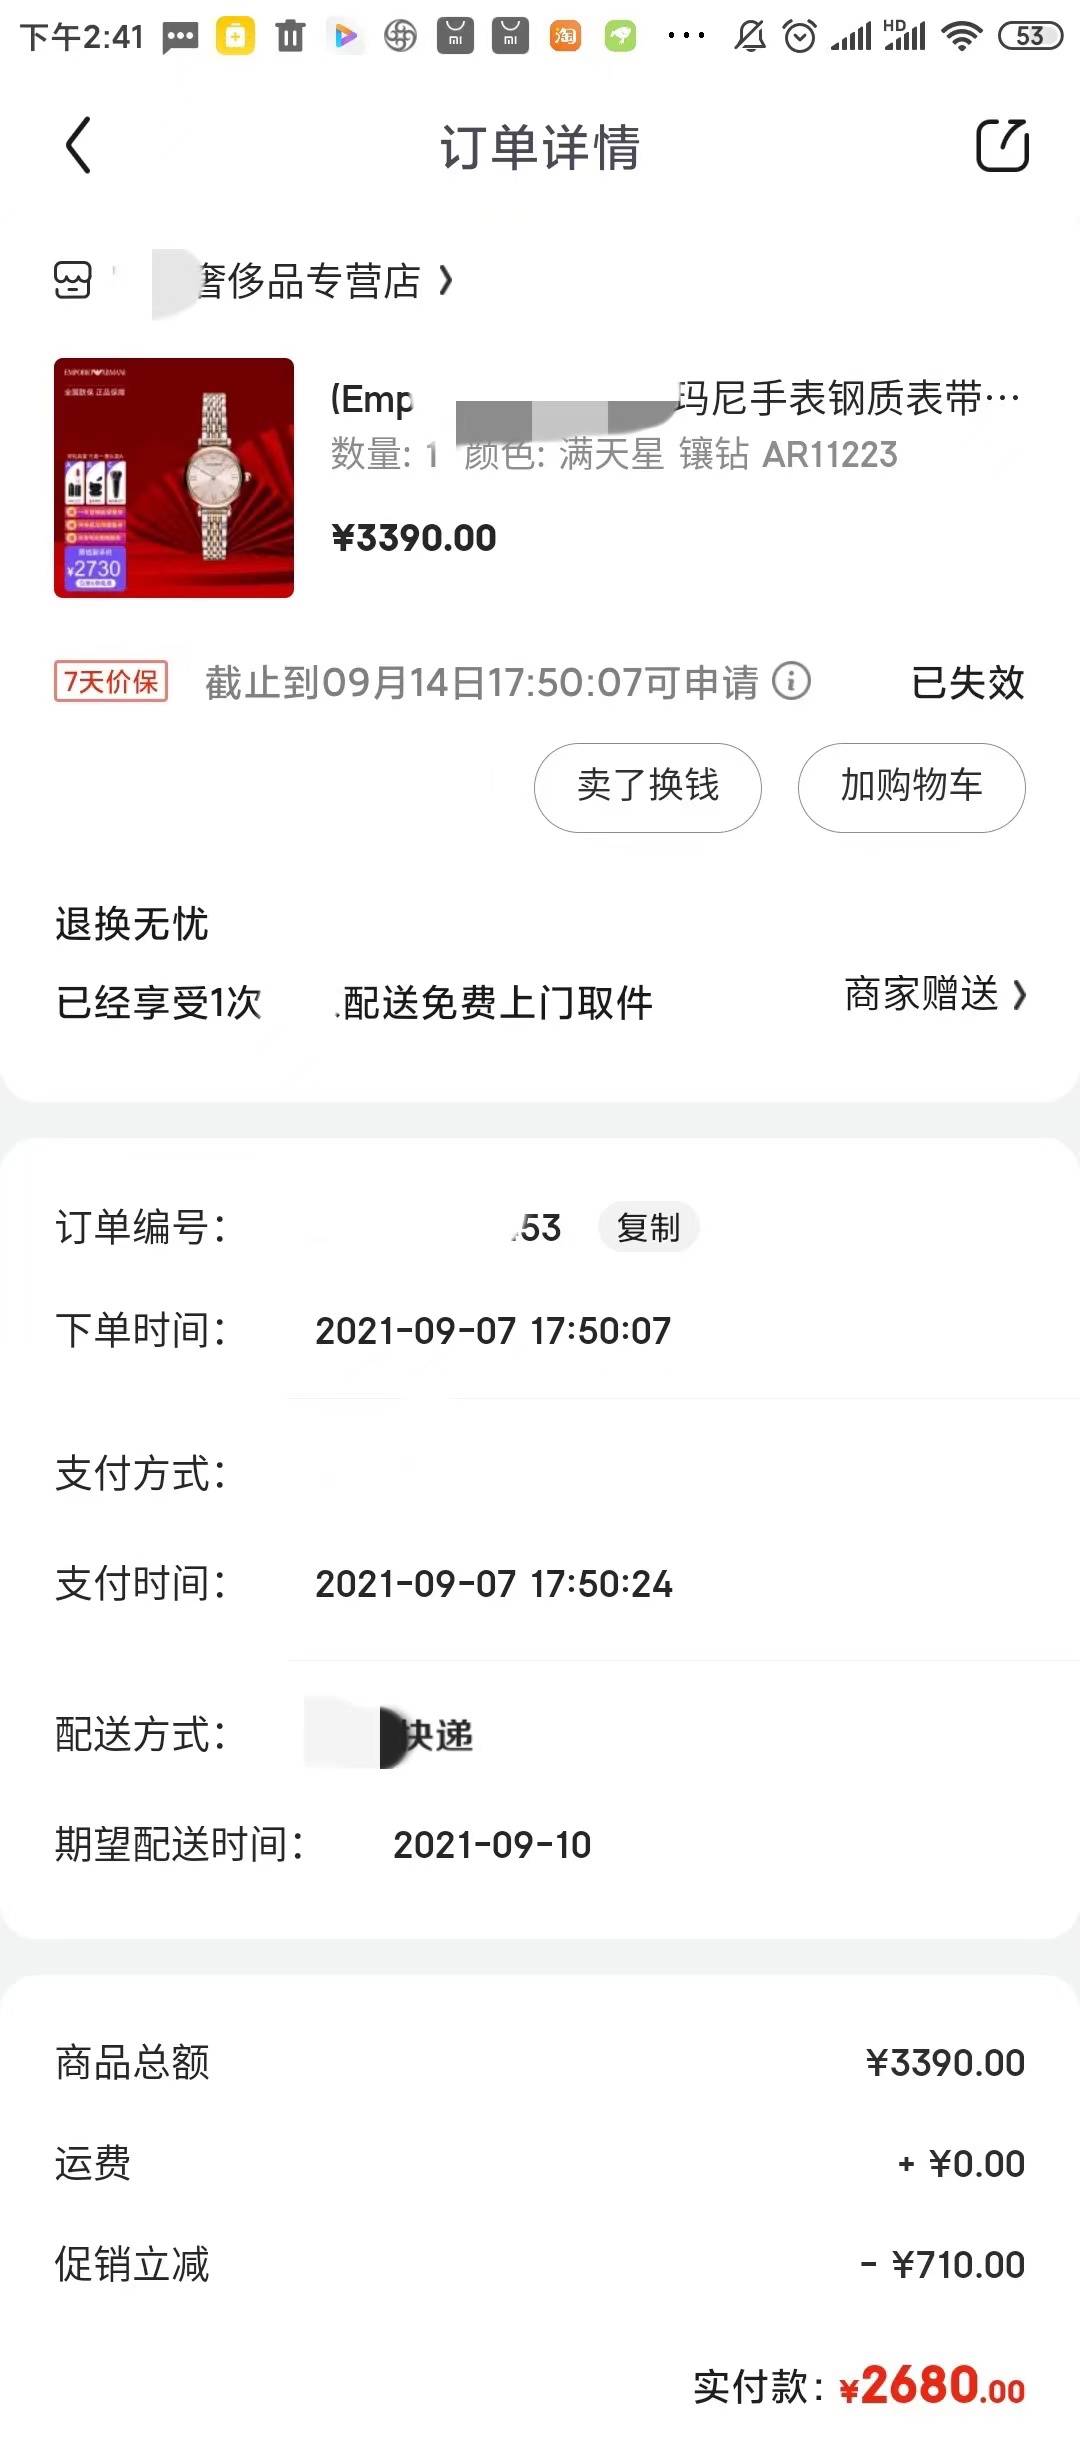 网络假表销售记录 上海警方供图